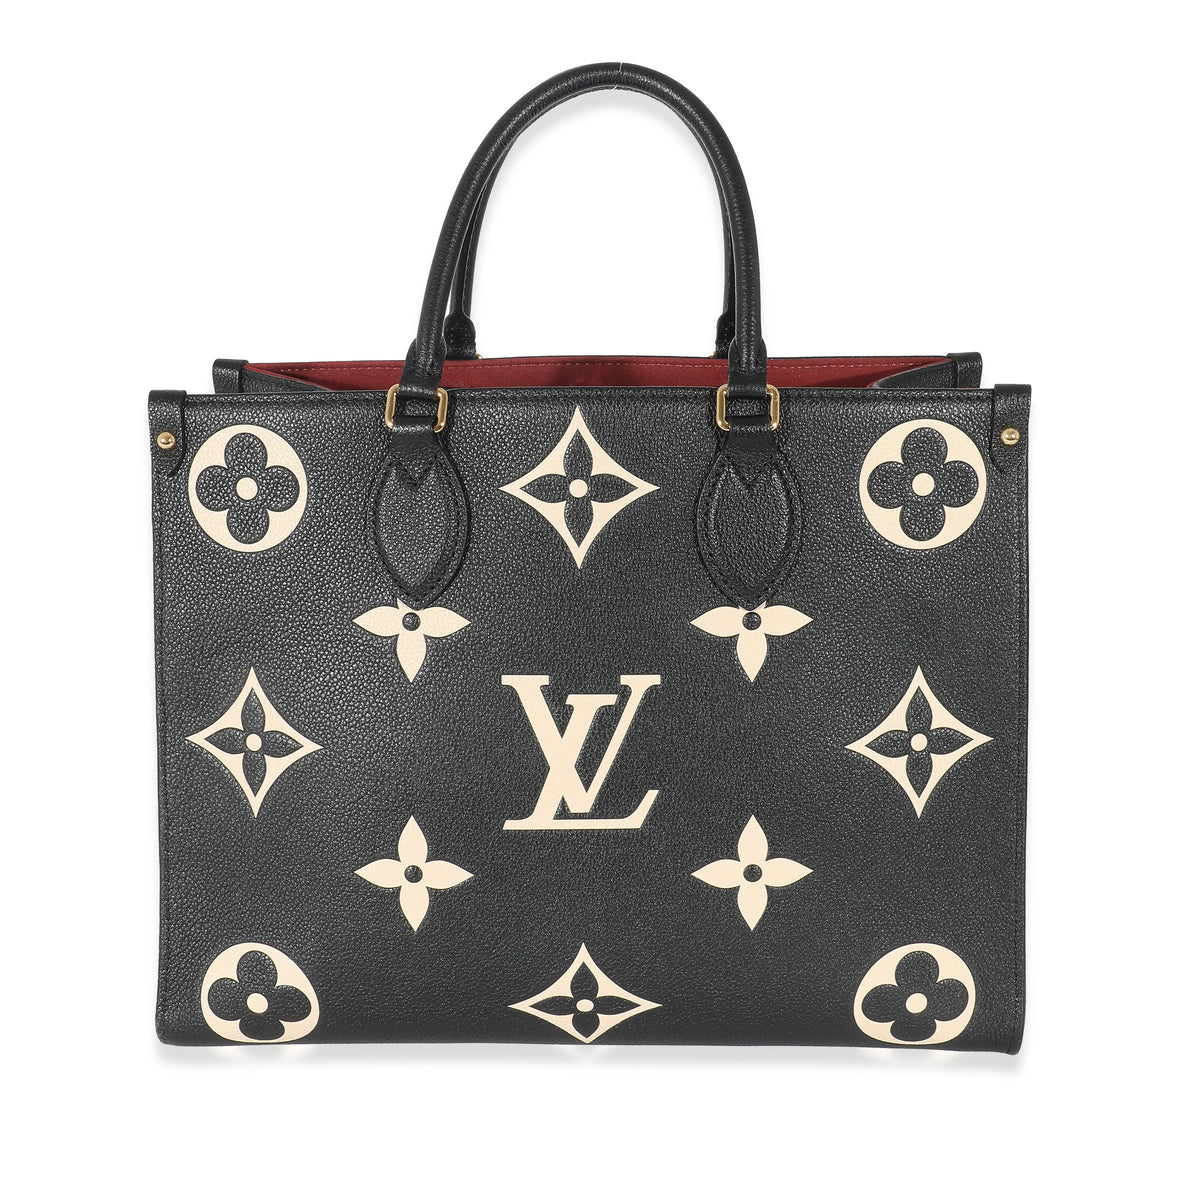 Louis Vuitton Black Monogram Empreinte Leather Card Holder, myGemma, SG